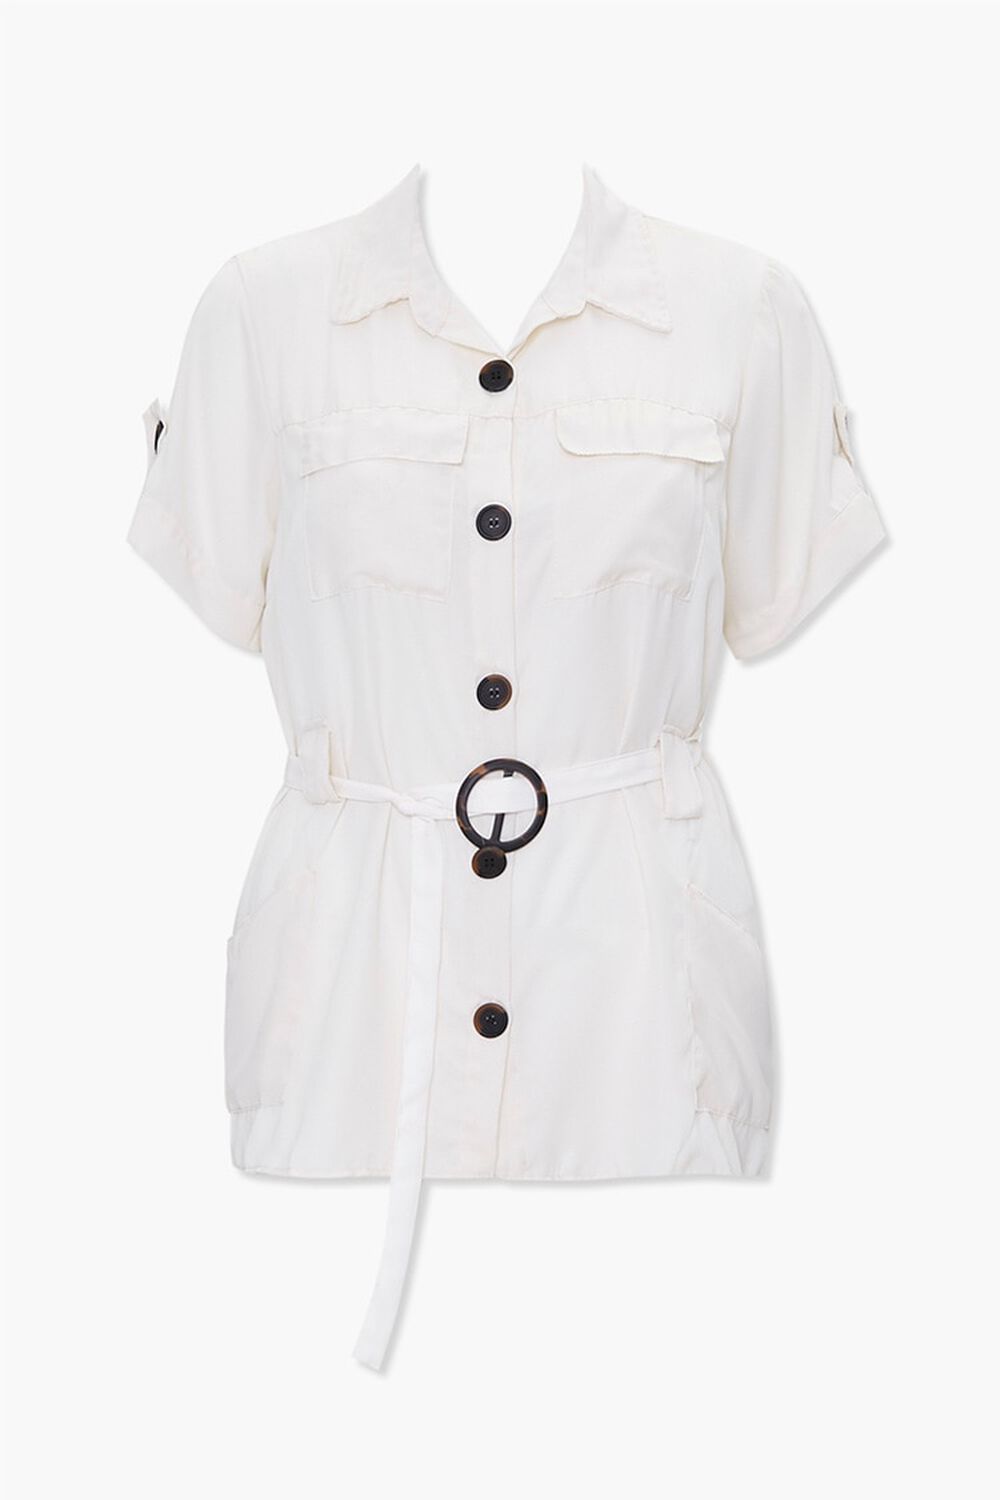 WHITE Plus Size Shirt Tunic, image 1